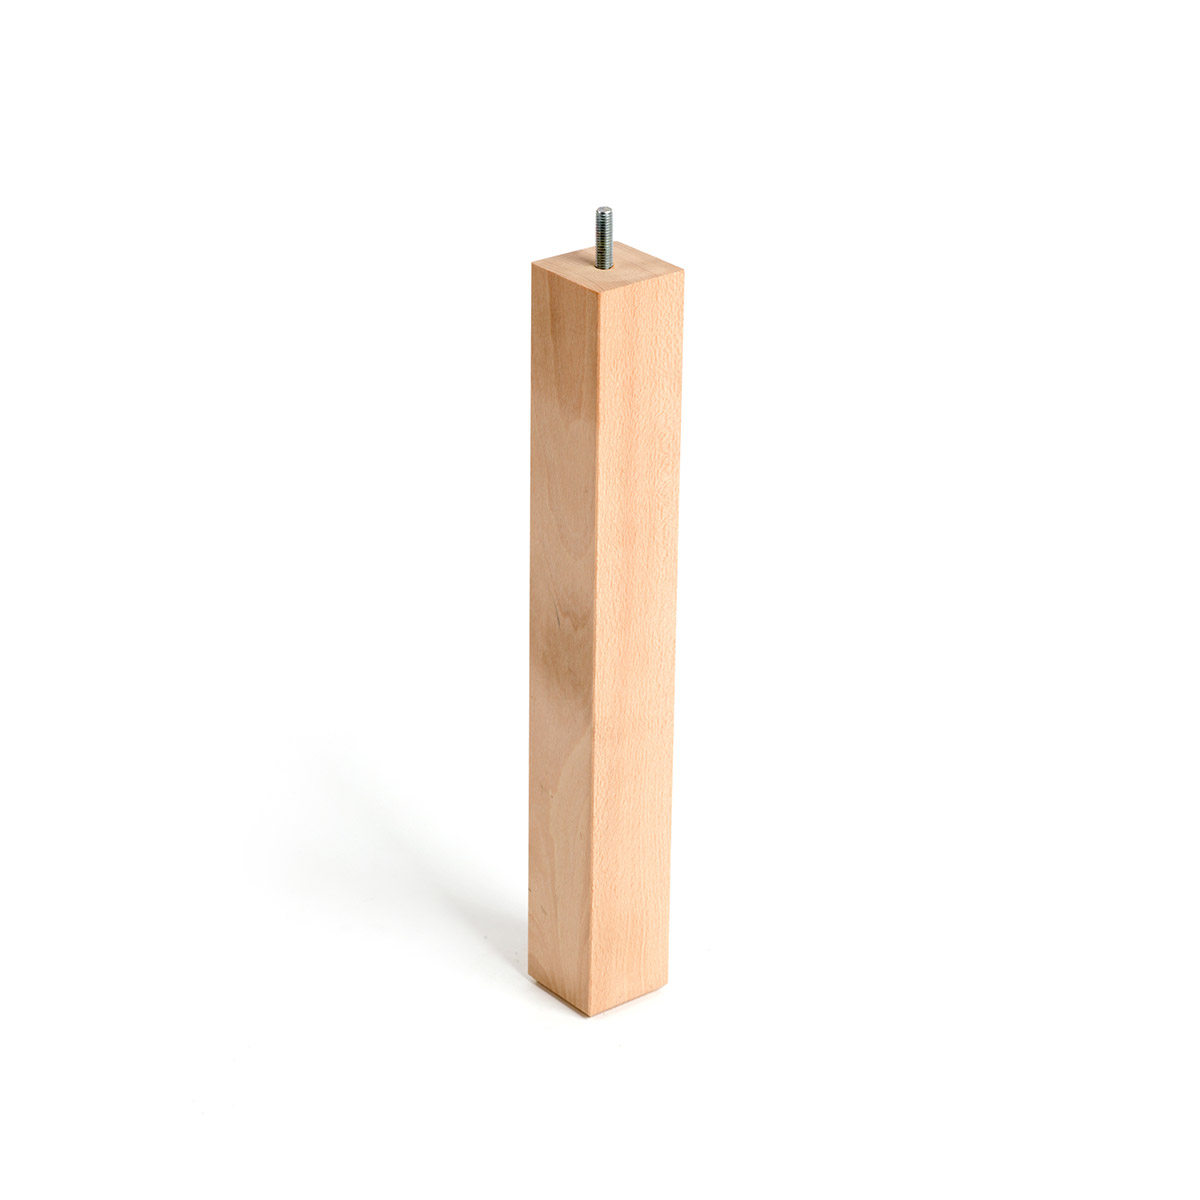 Pied carré en bois d'une hauteur de 360 mm et finition hêtre brut. Dimensions: 45x45x360 mm